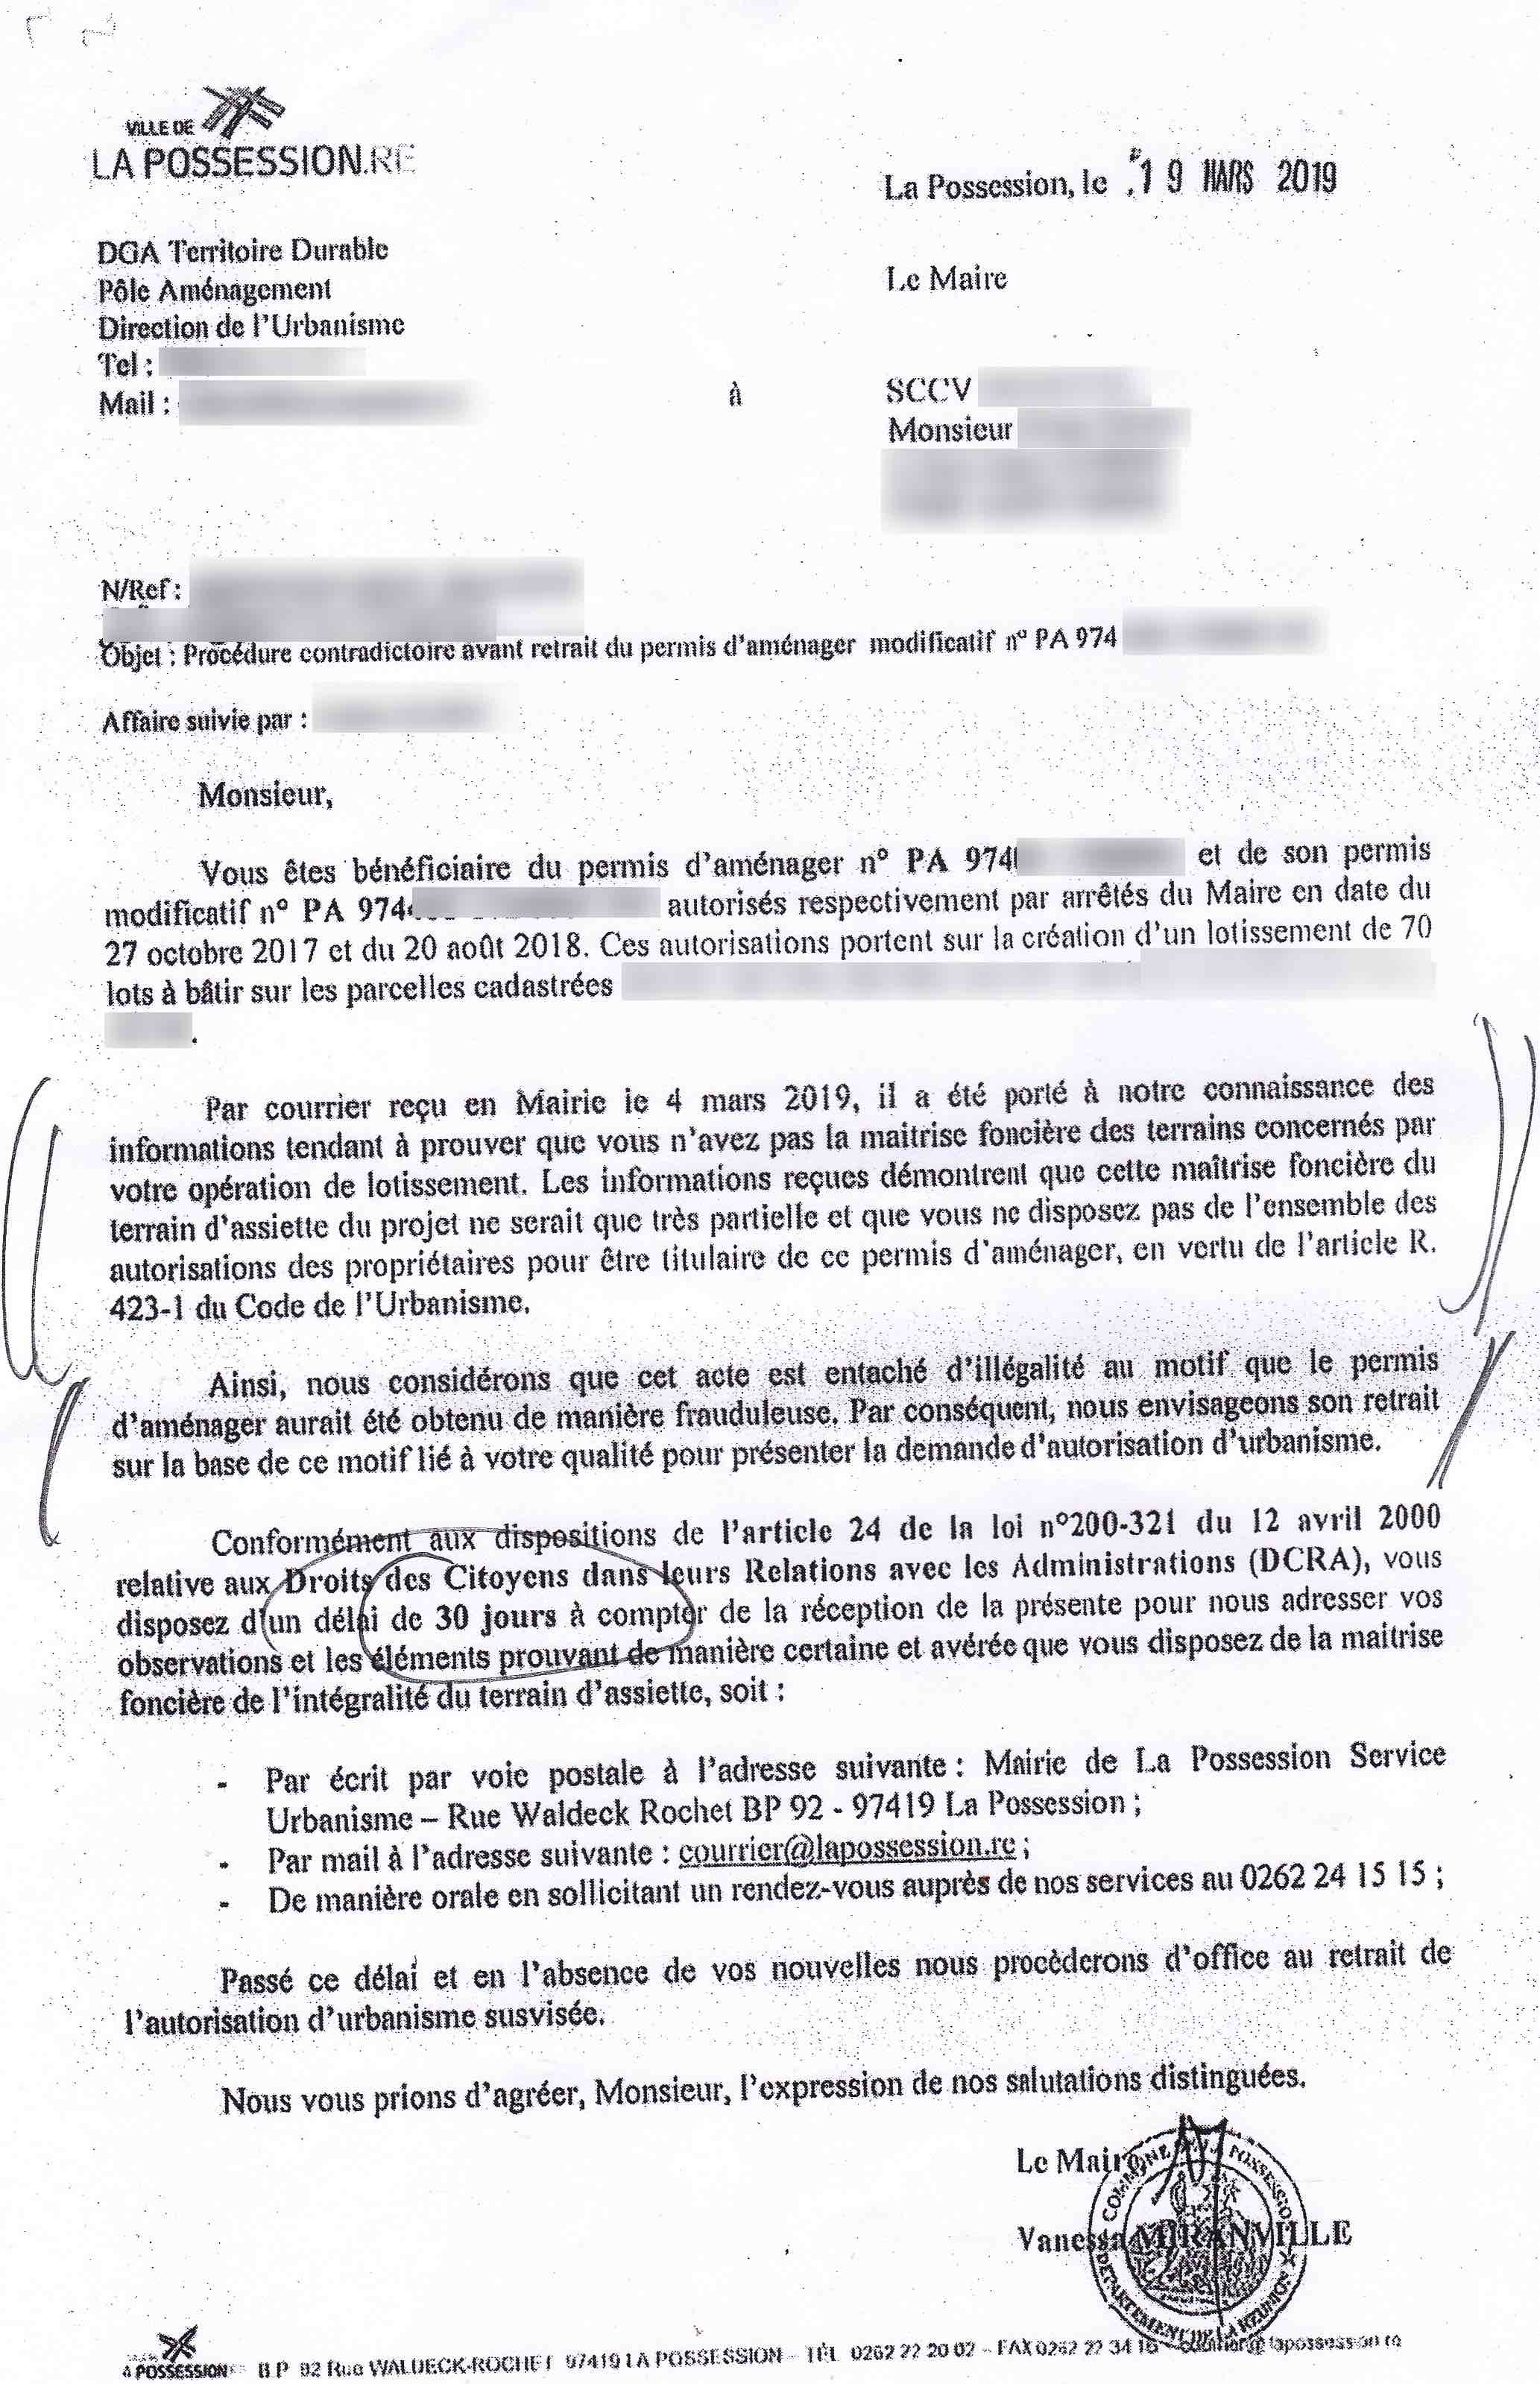 Soupçons de favoritisme pour un promoteur possessionnais: Philippe Robert apporte d'autres documents